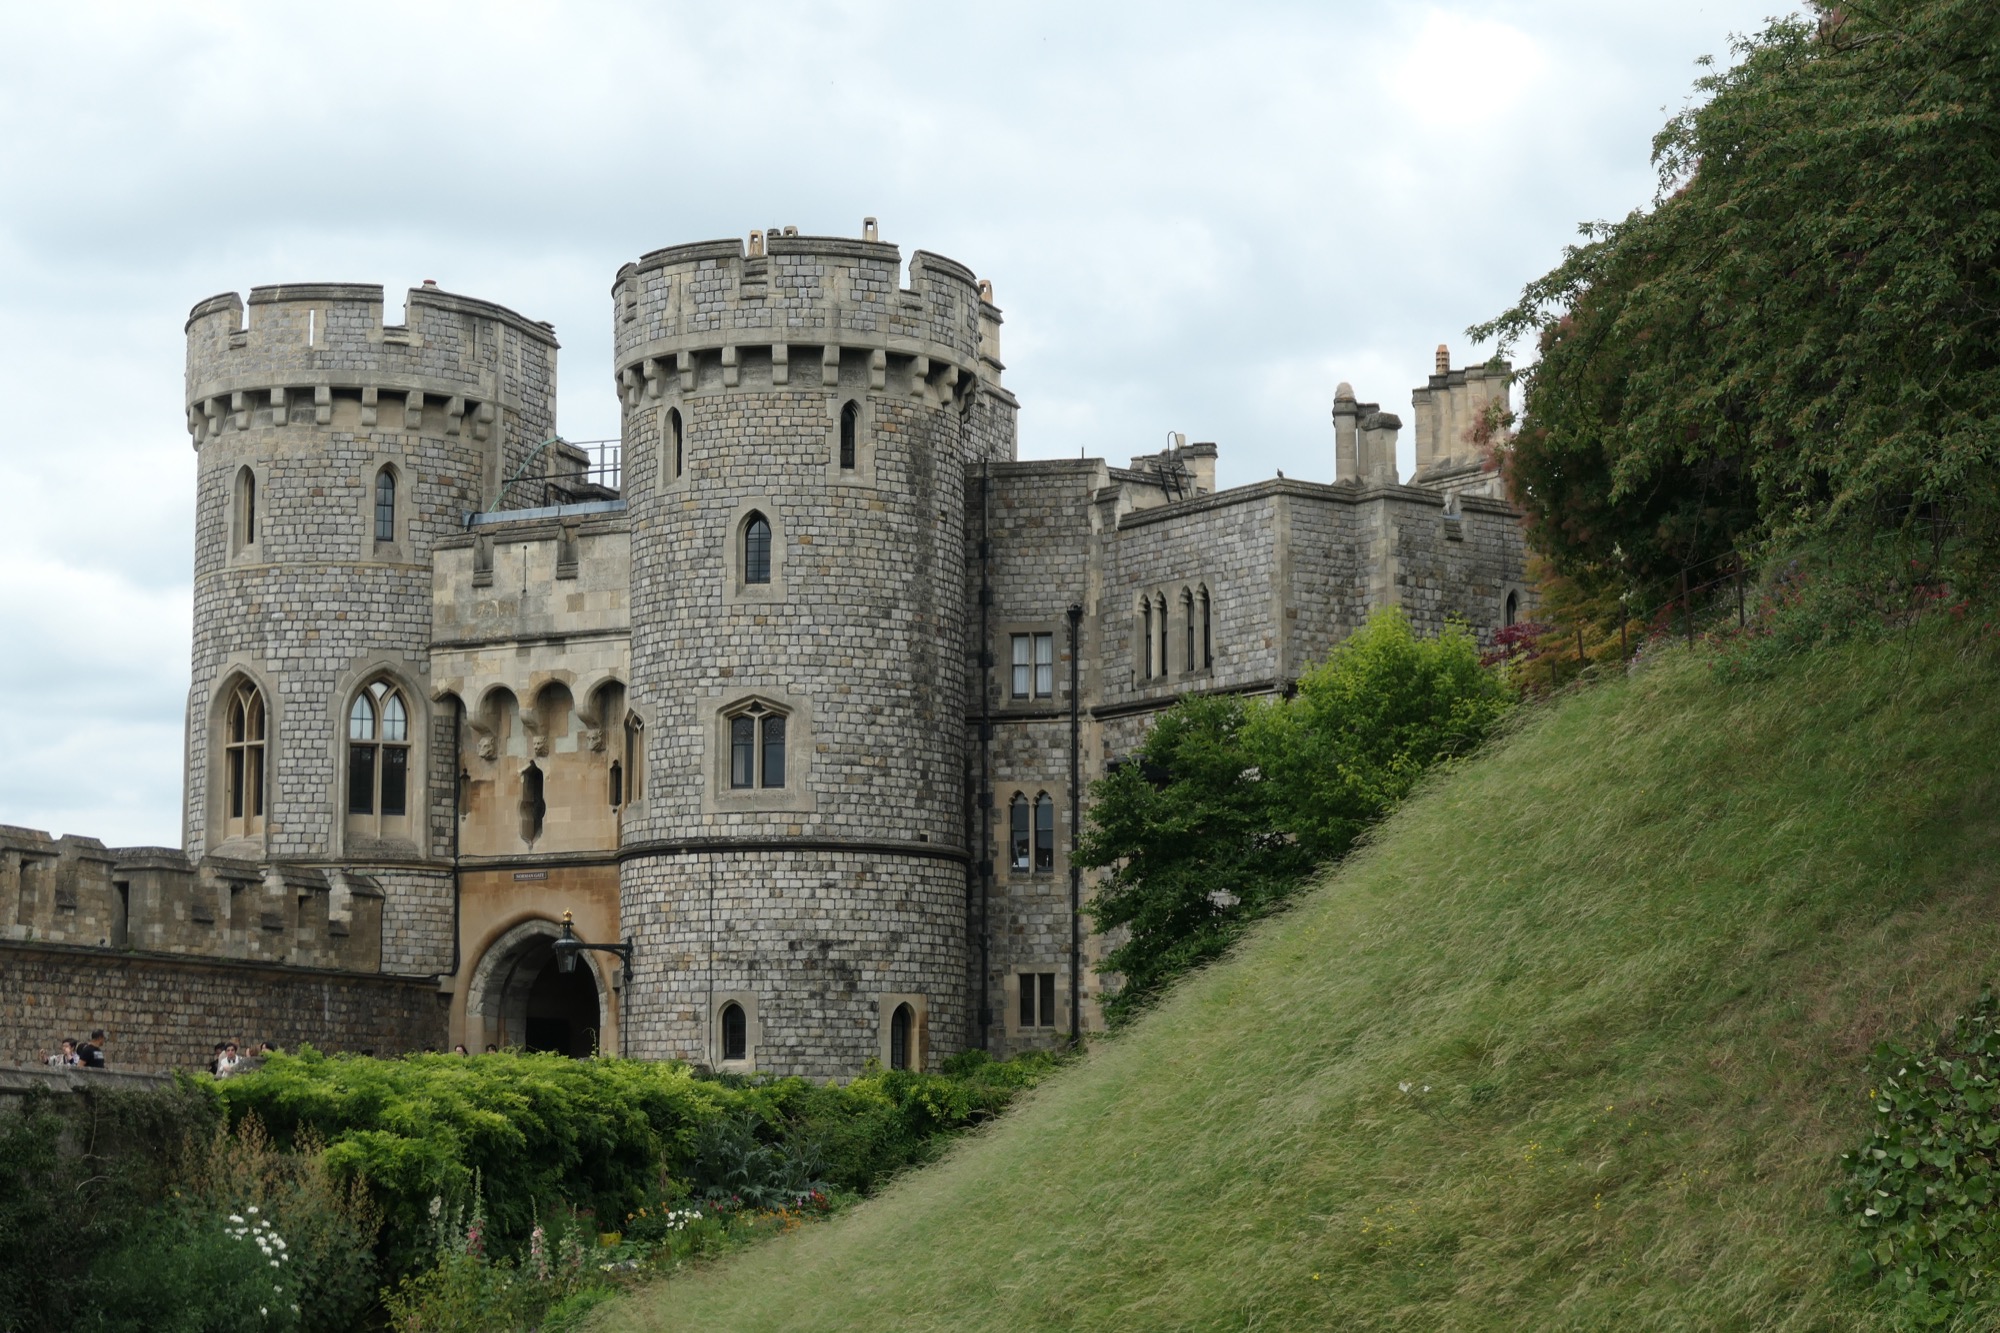 Normal Gate at Windsor Castle